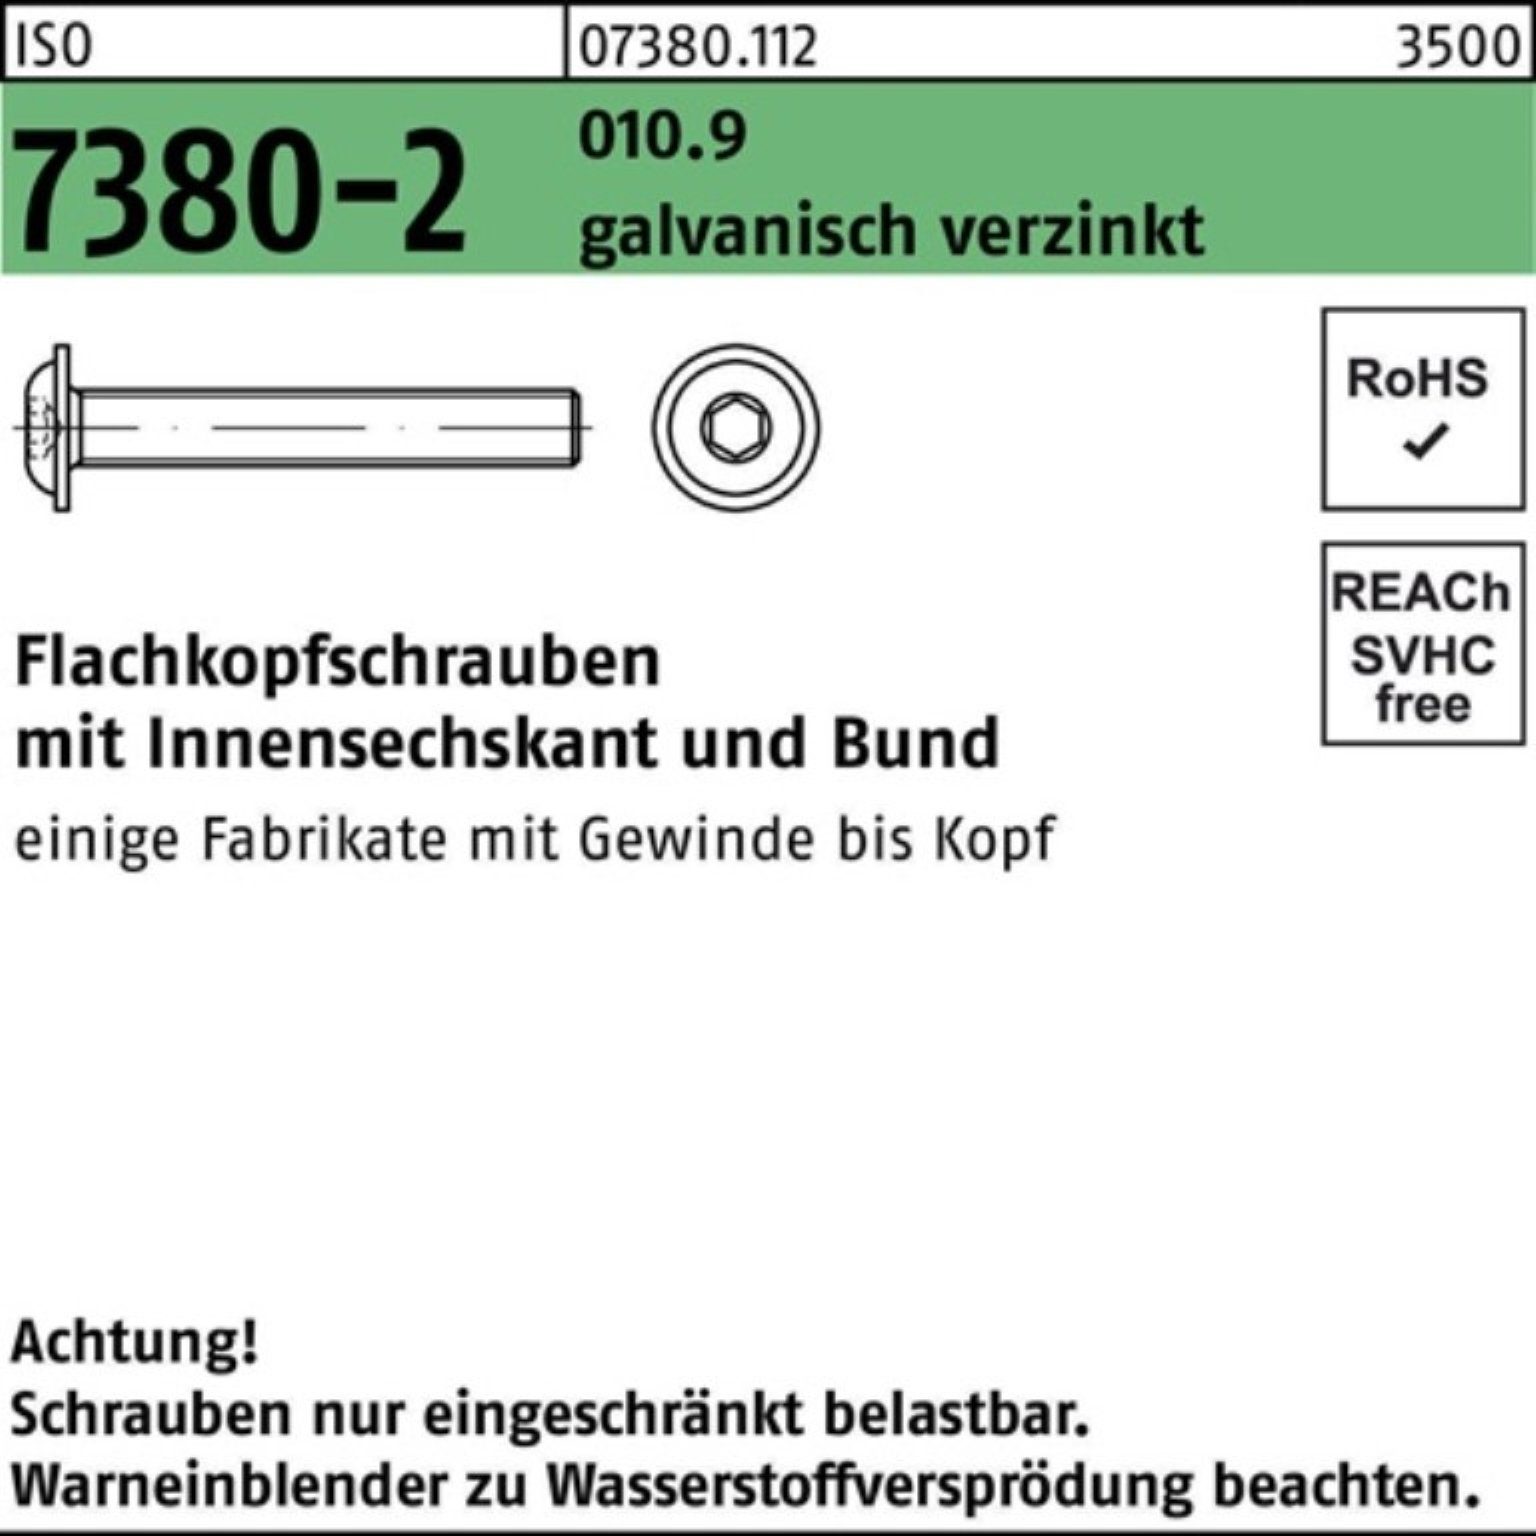 Reyher Schraube 100er Pack Bund/Innen-6kt 010.9 ga 7380-2 M12x30 Flachkopfschraube ISO